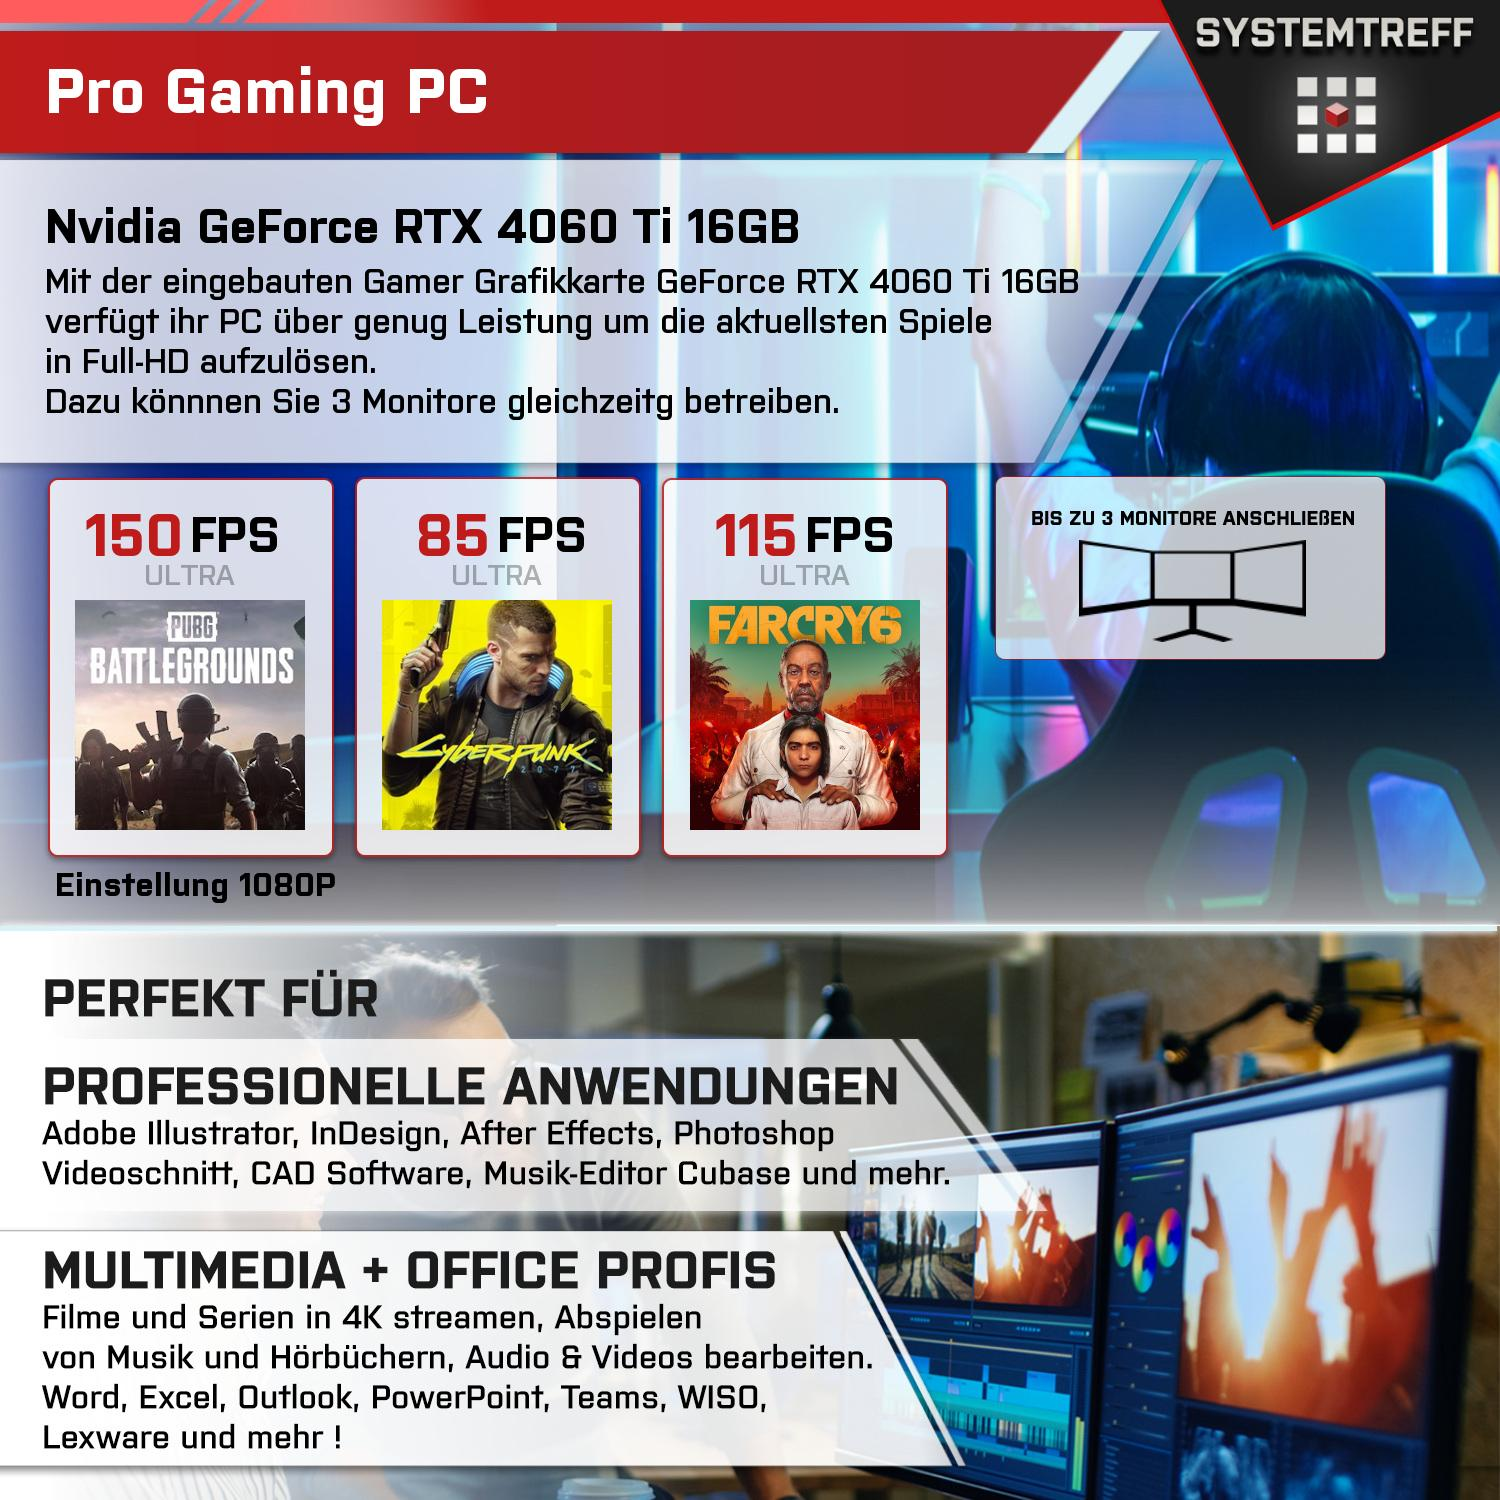 SYSTEMTREFF Gaming Komplett AMD Ryzen 4060Ti mit GDDR6 7950X3D 8GB 1000 PC RTX 3, 32 Prozessor, GeForce 7950X3D, DLSS Komplett GB mit GB GB Nvidia RAM, mSSD, 16 9